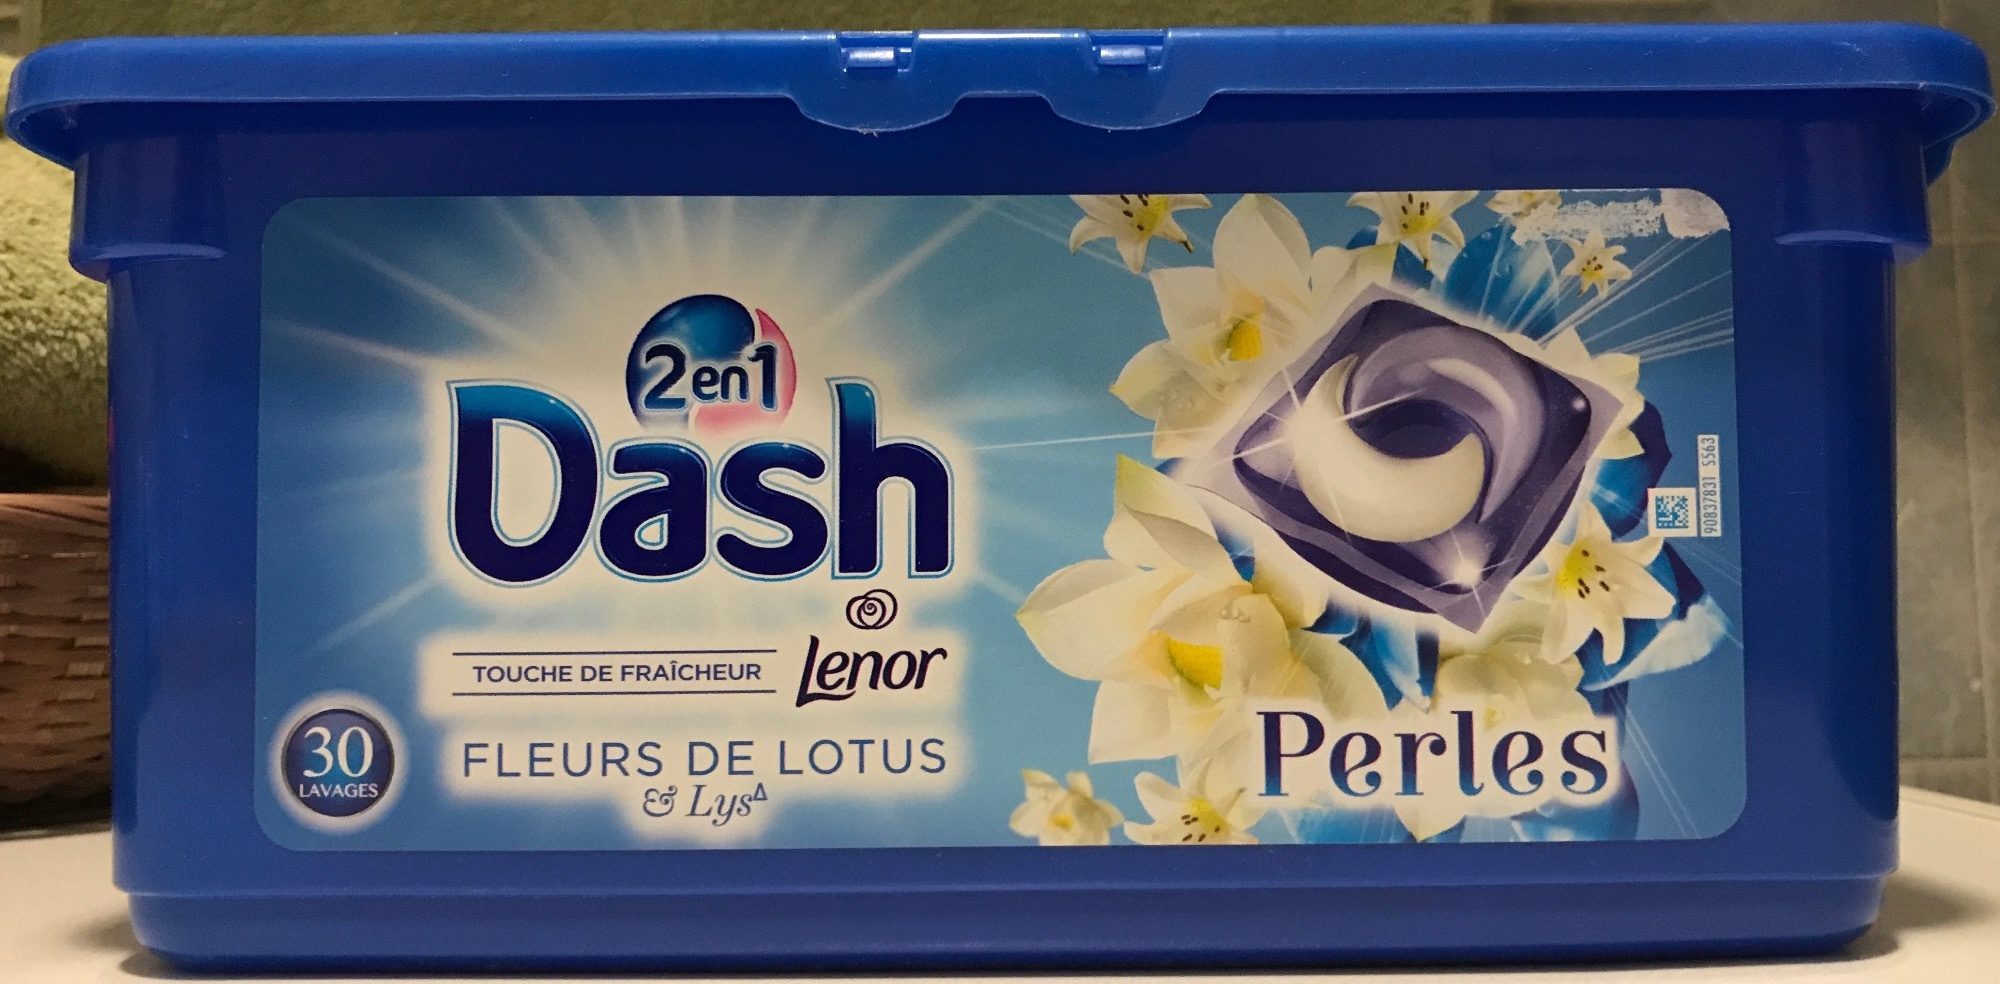 Dash 2 en 1 Touche de fraîcheur Perles Fleurs de Lotus & Lys - Produit - fr